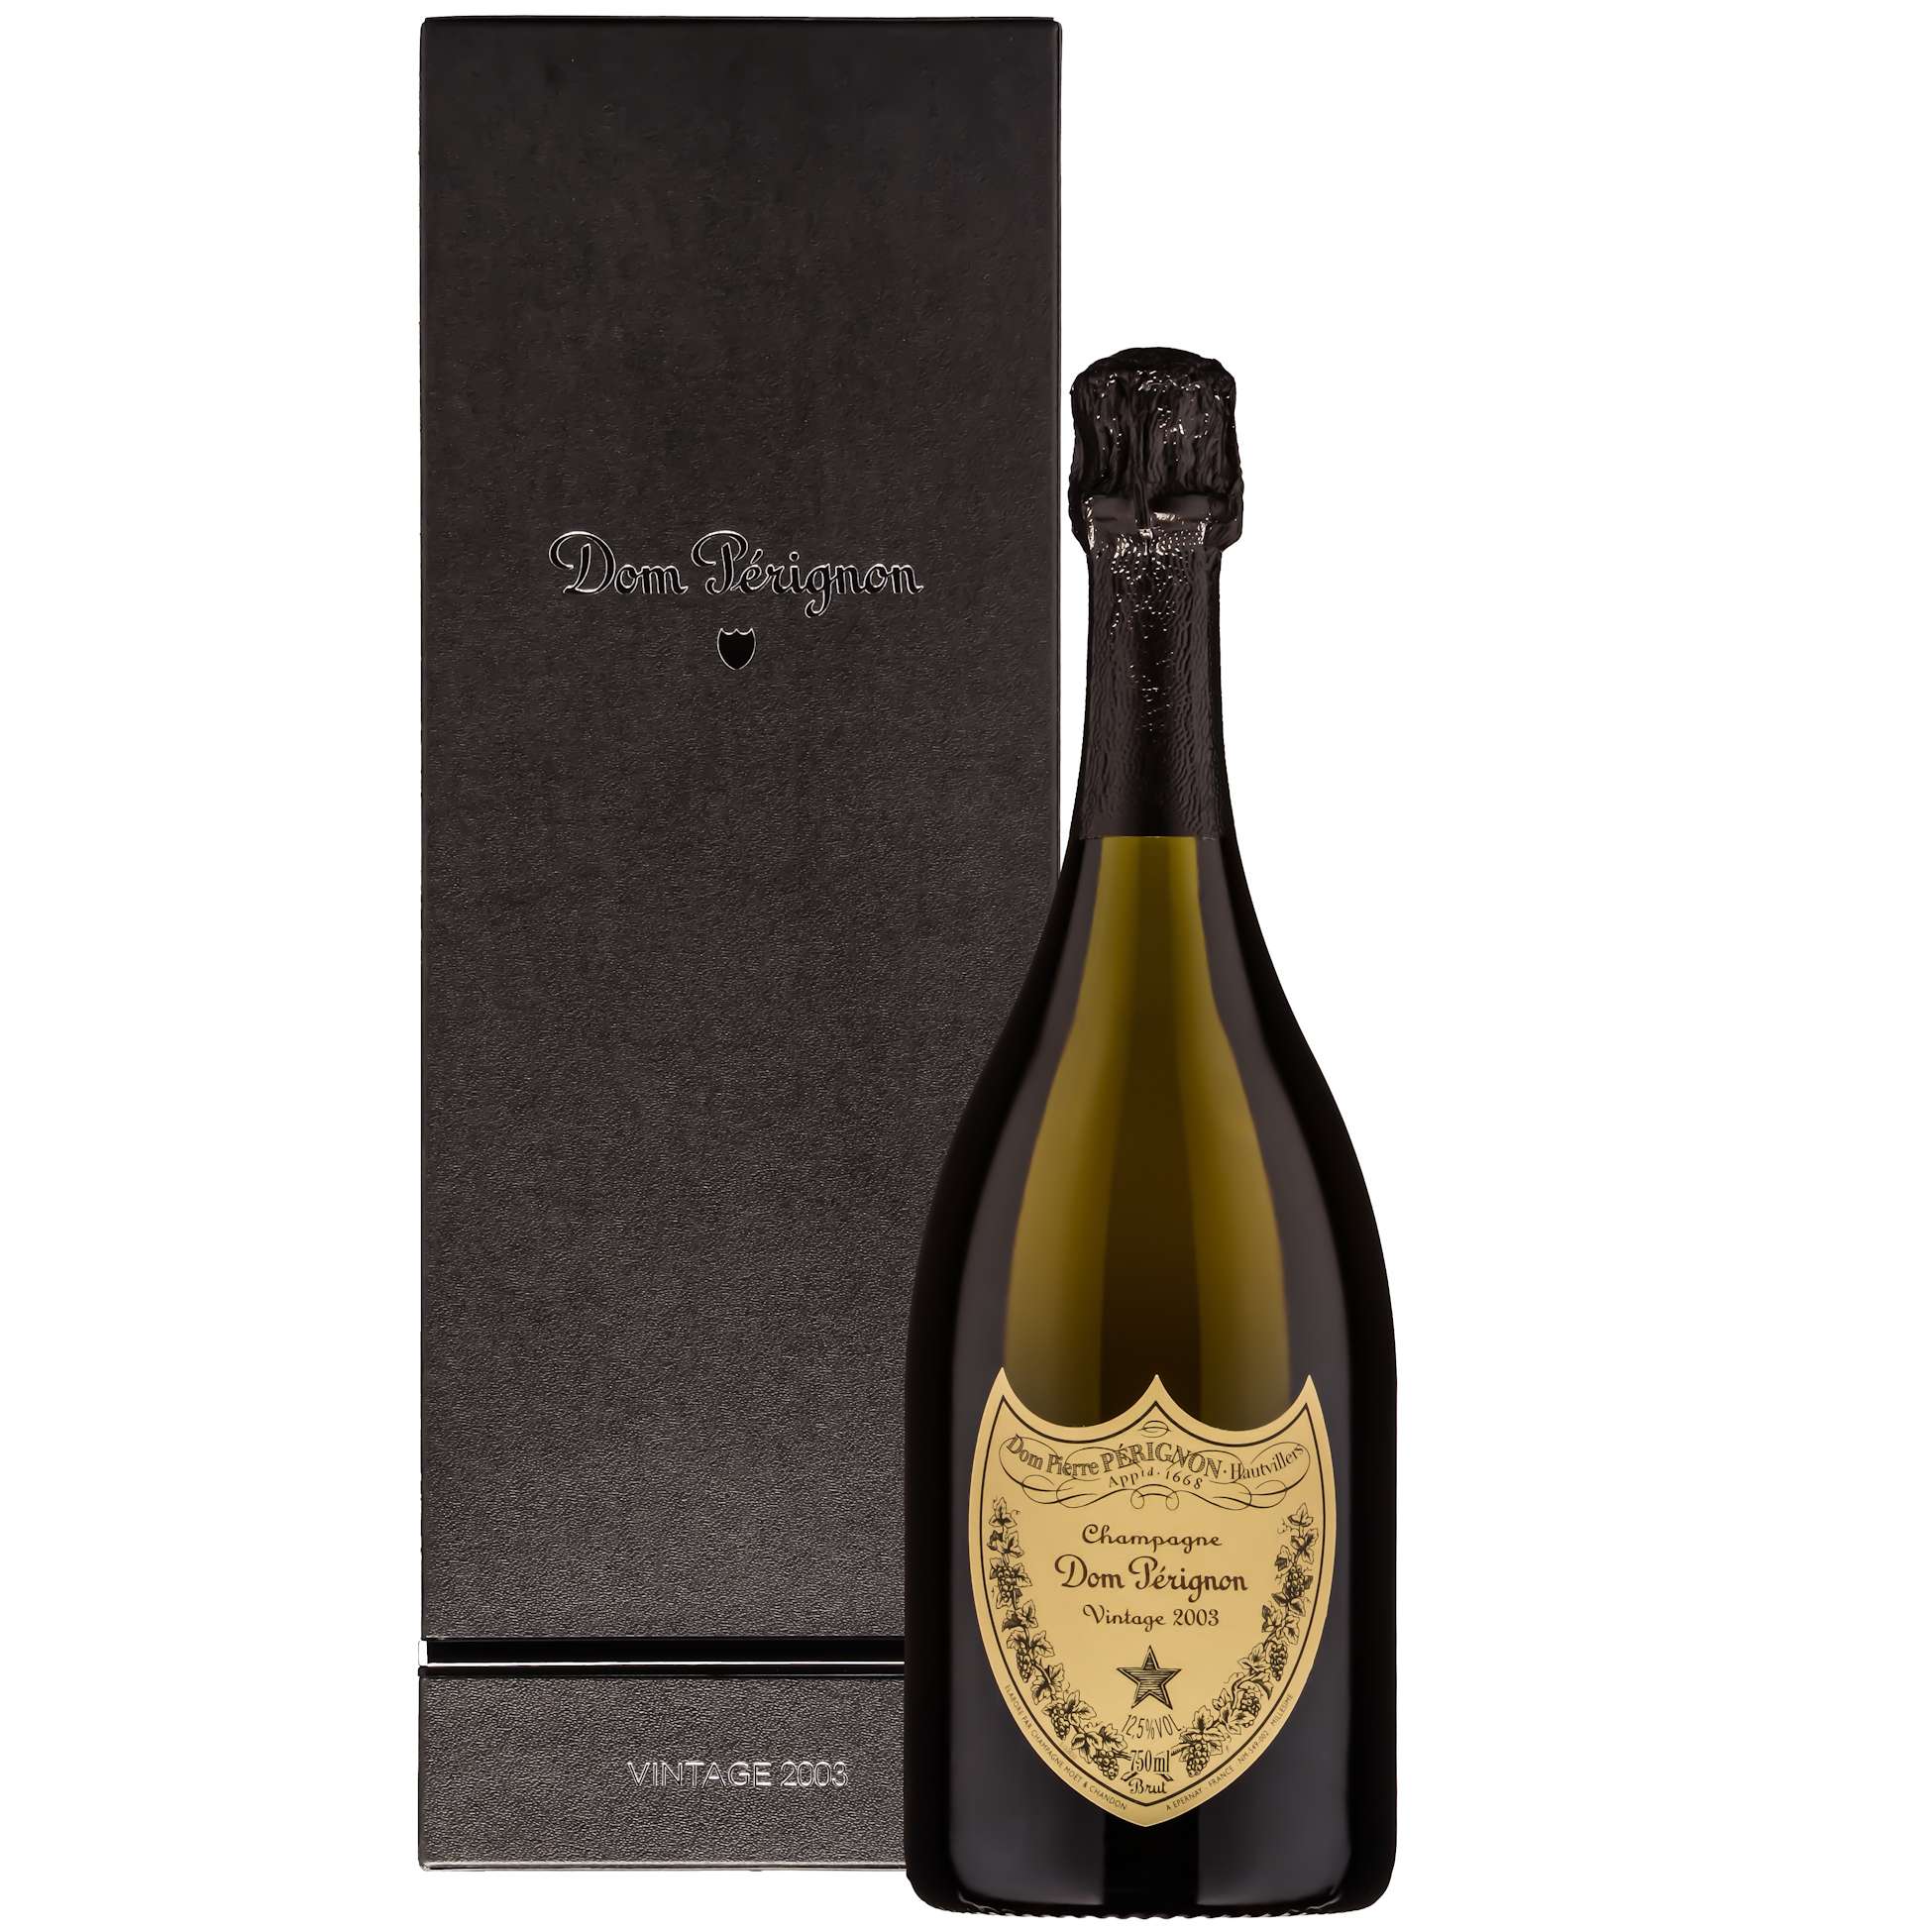 a bottle of Dom Perignon champagne 